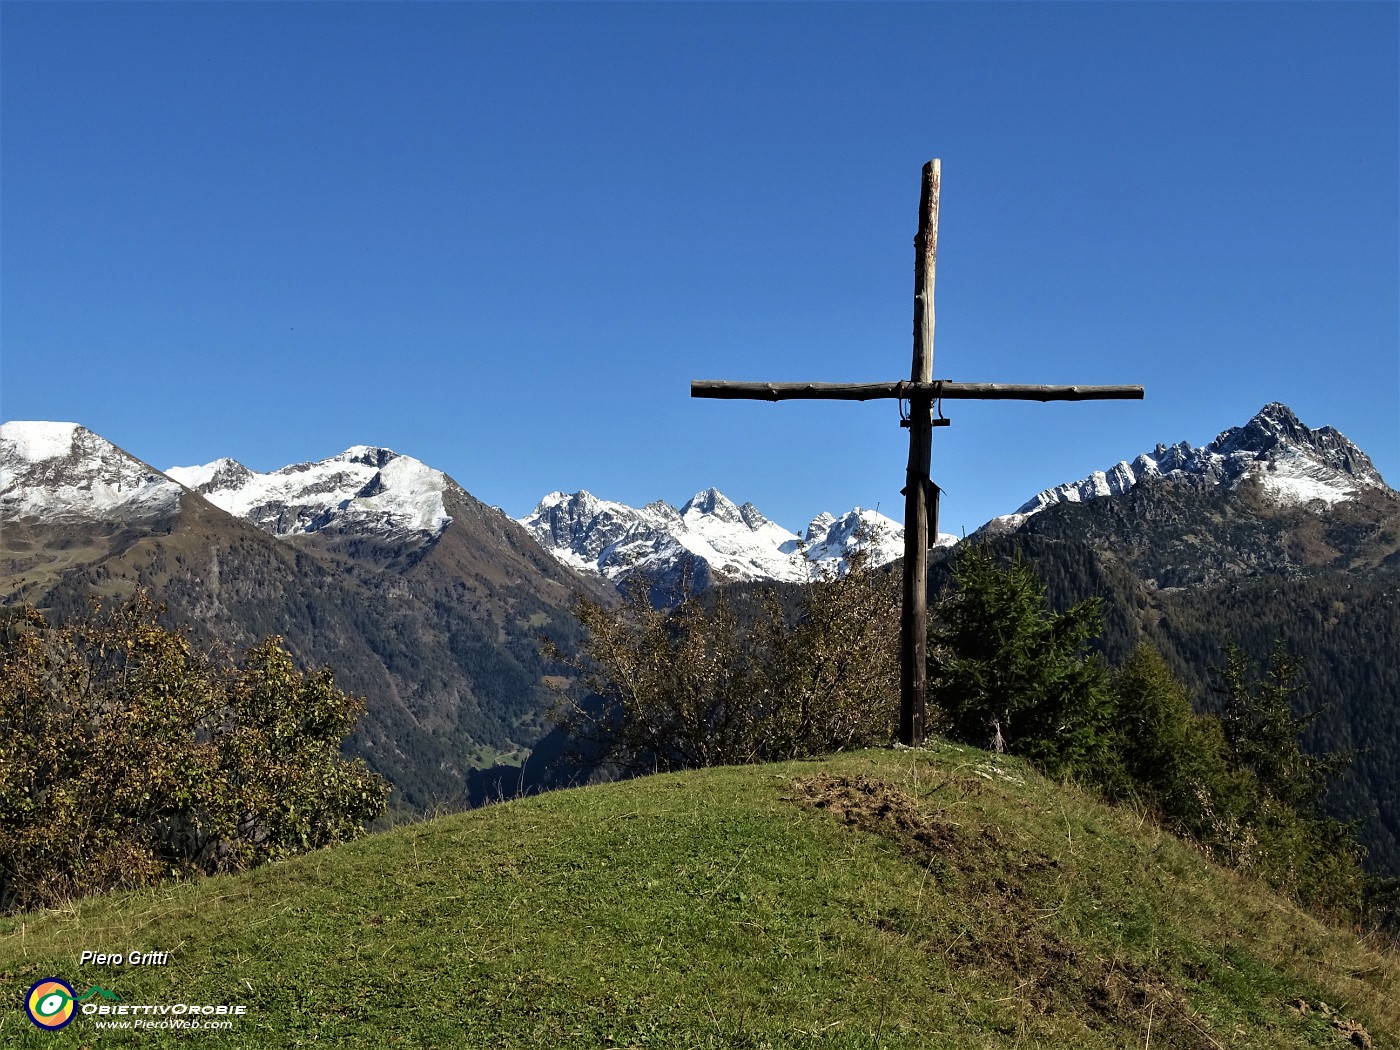 48 Alla croce del Monte Colle (1750 m) con vista verso le alte Orobie Brembane.JPG